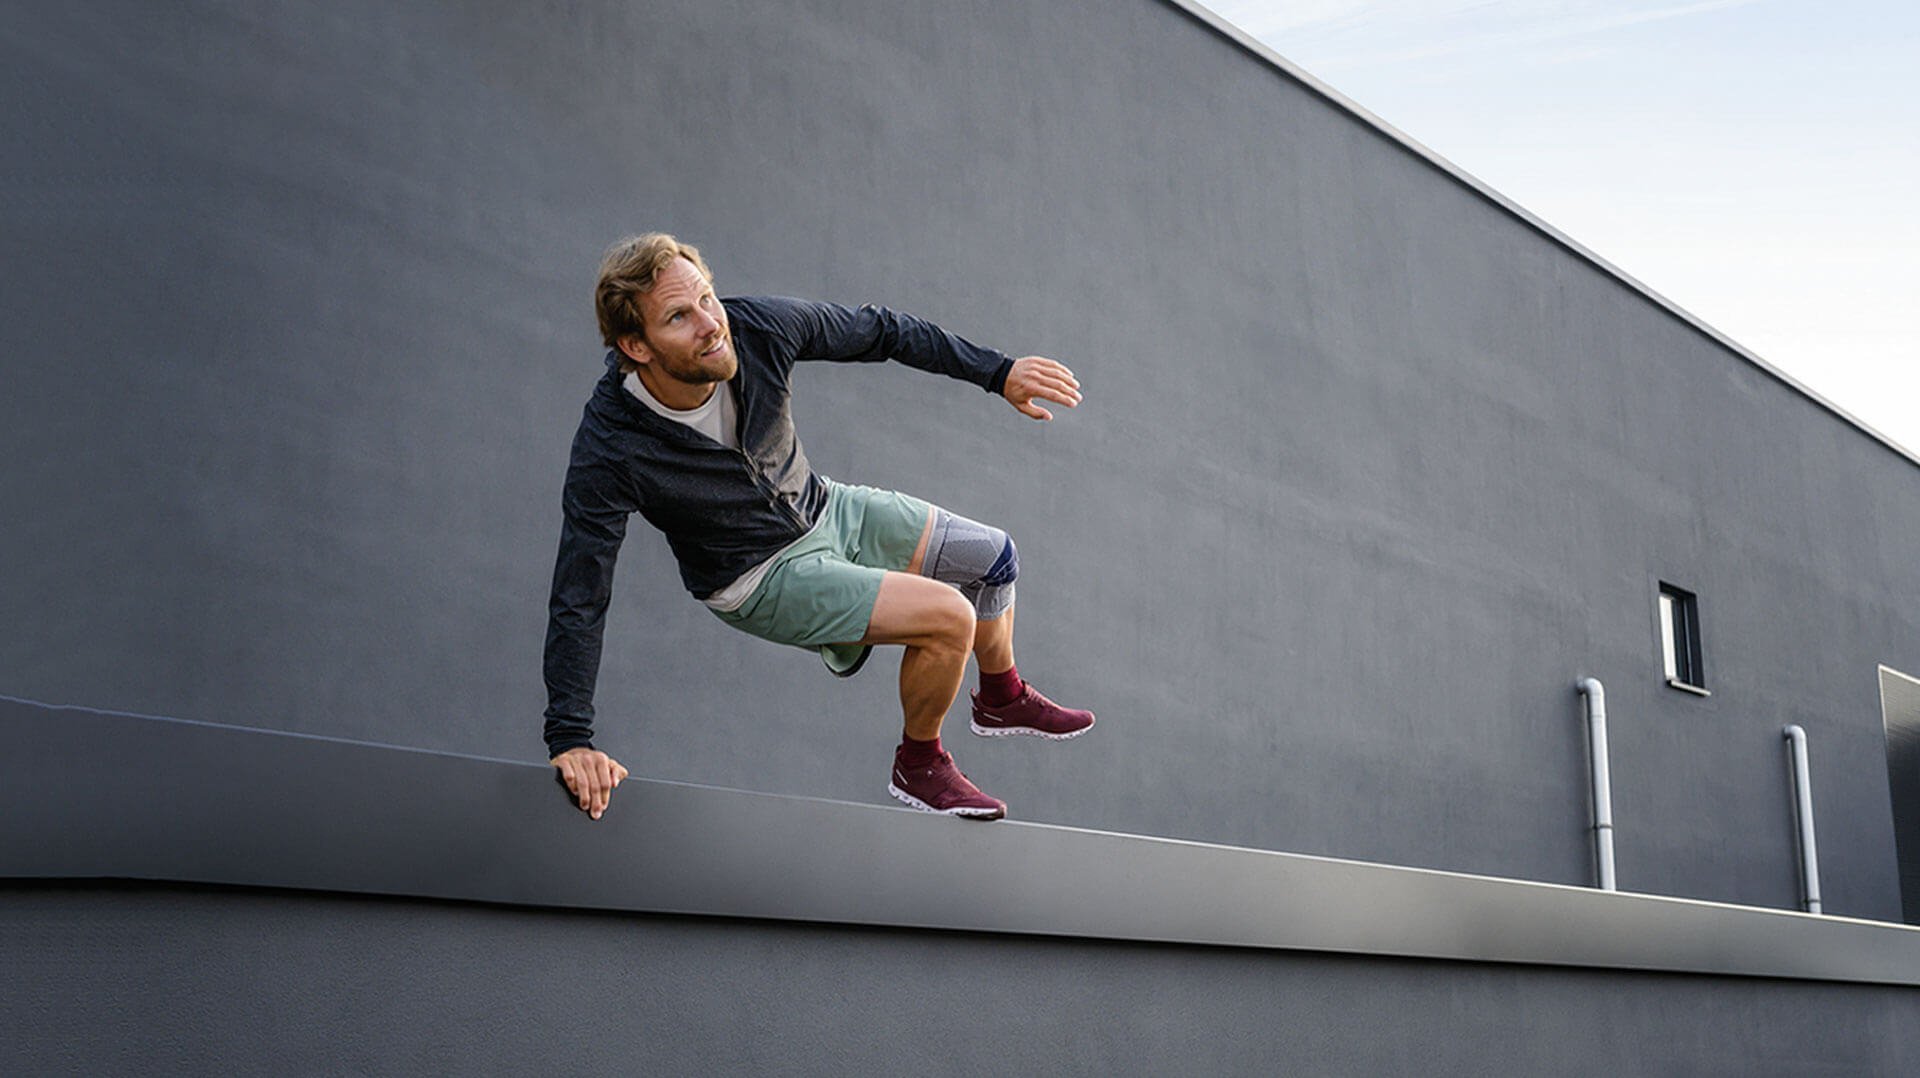 Abgebildet ist ein sportlicher Mann, der über ein Geländer vor einem Gebäude springt. Er trägt eine GenuTrian, eine schmerzlindernde Kniegelenksbandage von Bauerfeind, am linken Knie.